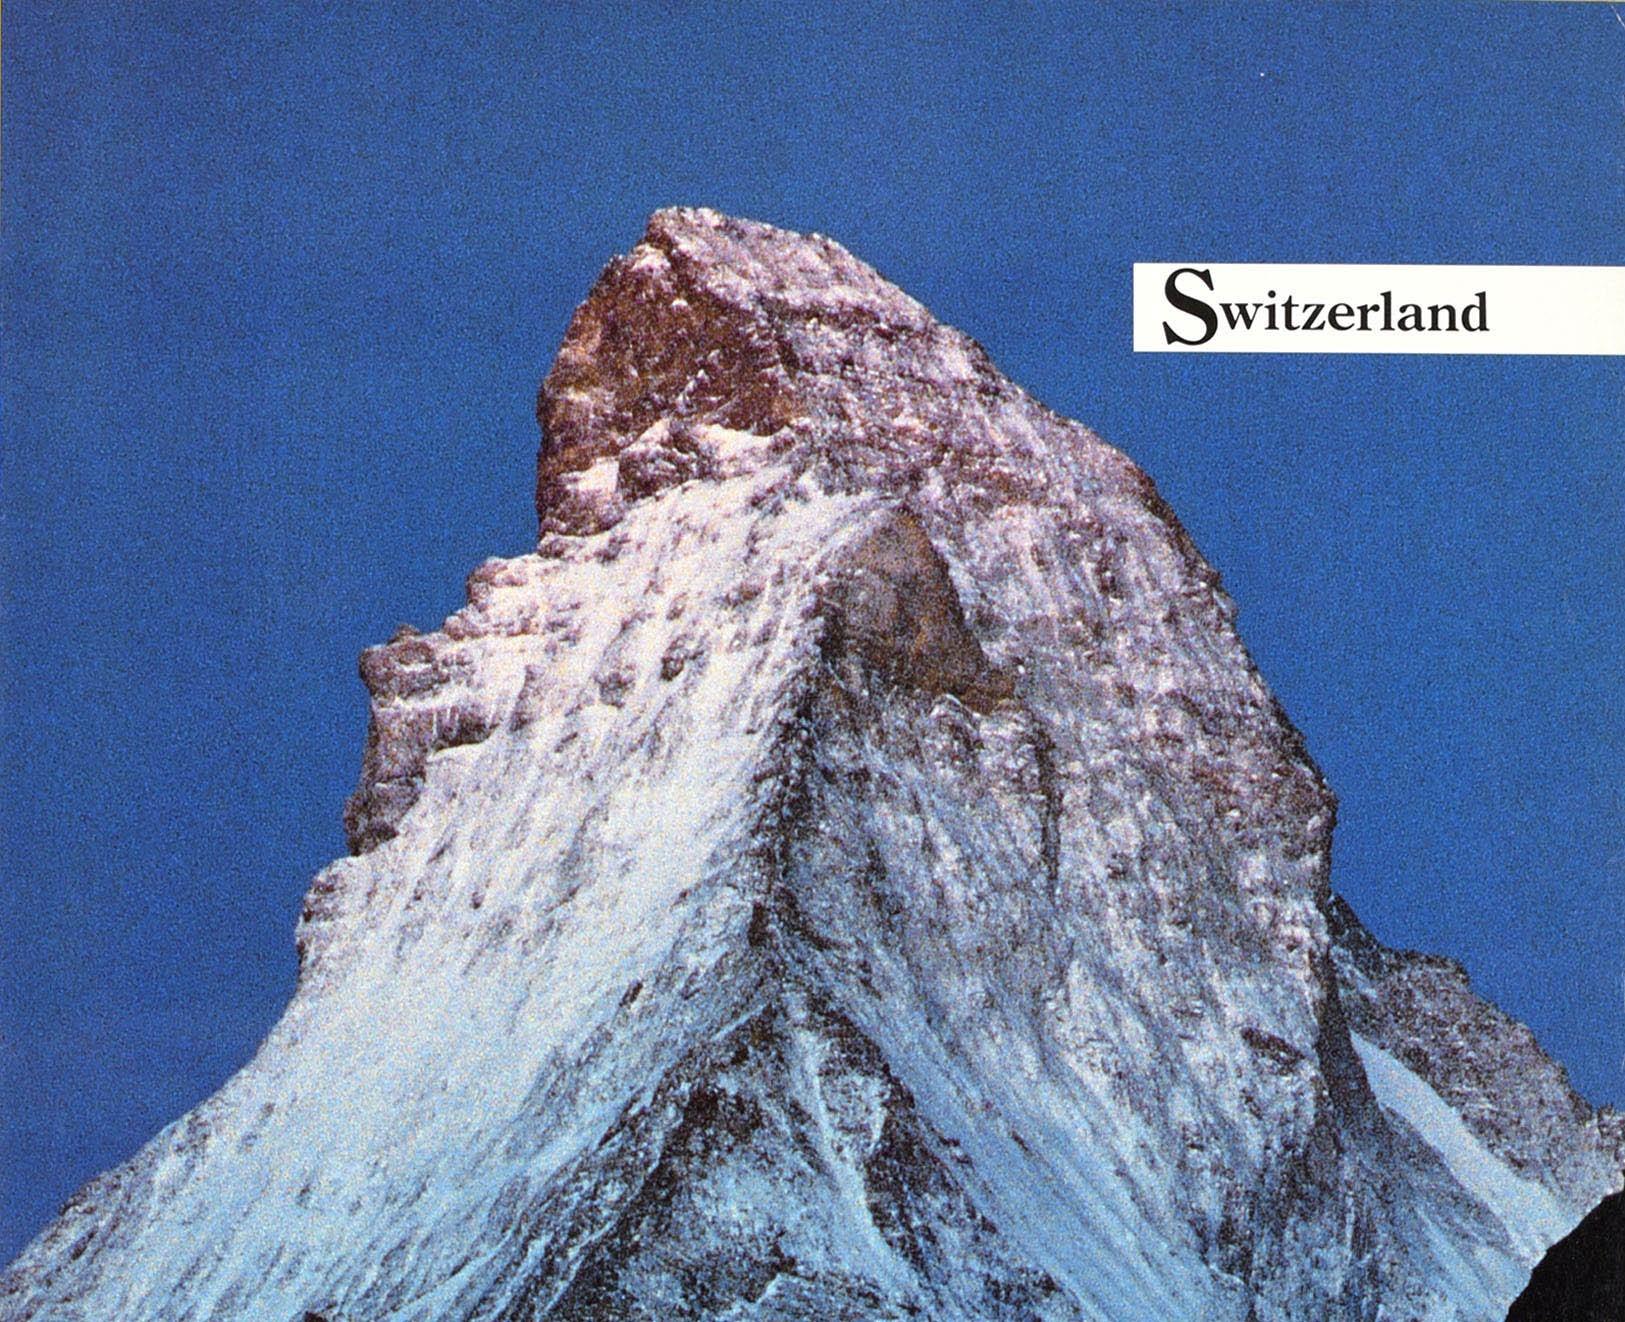 Original-Reiseplakat für die Schweiz, herausgegeben von Air Canada, mit einem Foto des schneebedeckten Matterhorns, das sich dramatisch gegen den blauen Himmel erhebt, mit Bäumen und Hügeln im Schatten im Vordergrund, dem Titel in schwarzen